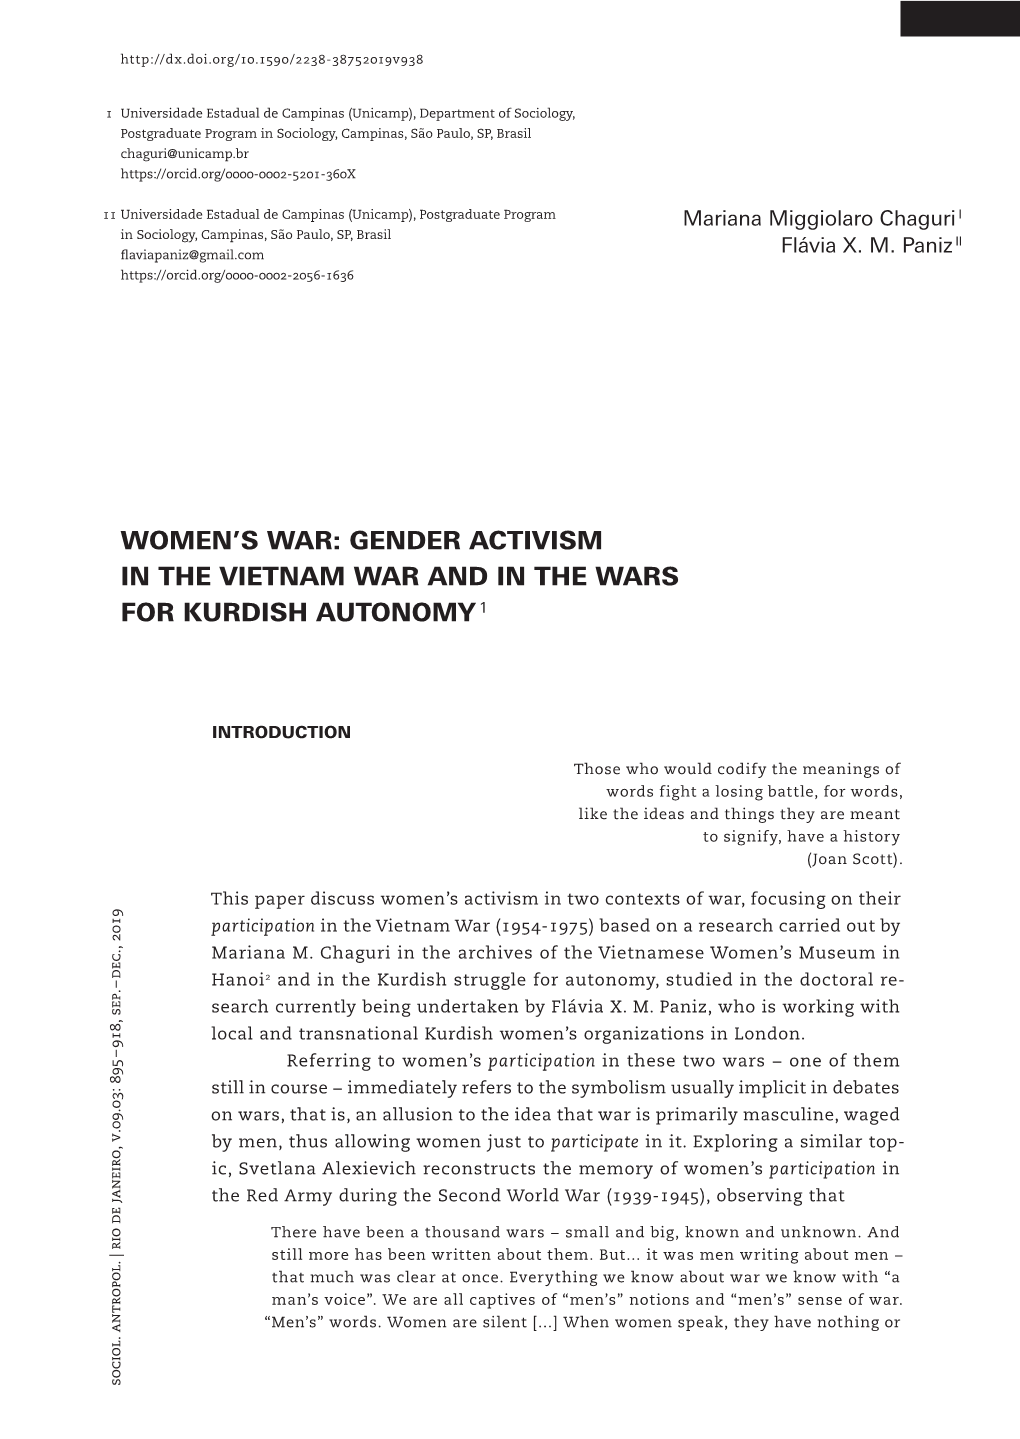 Women's War: Gender Activism in the Vietnam War